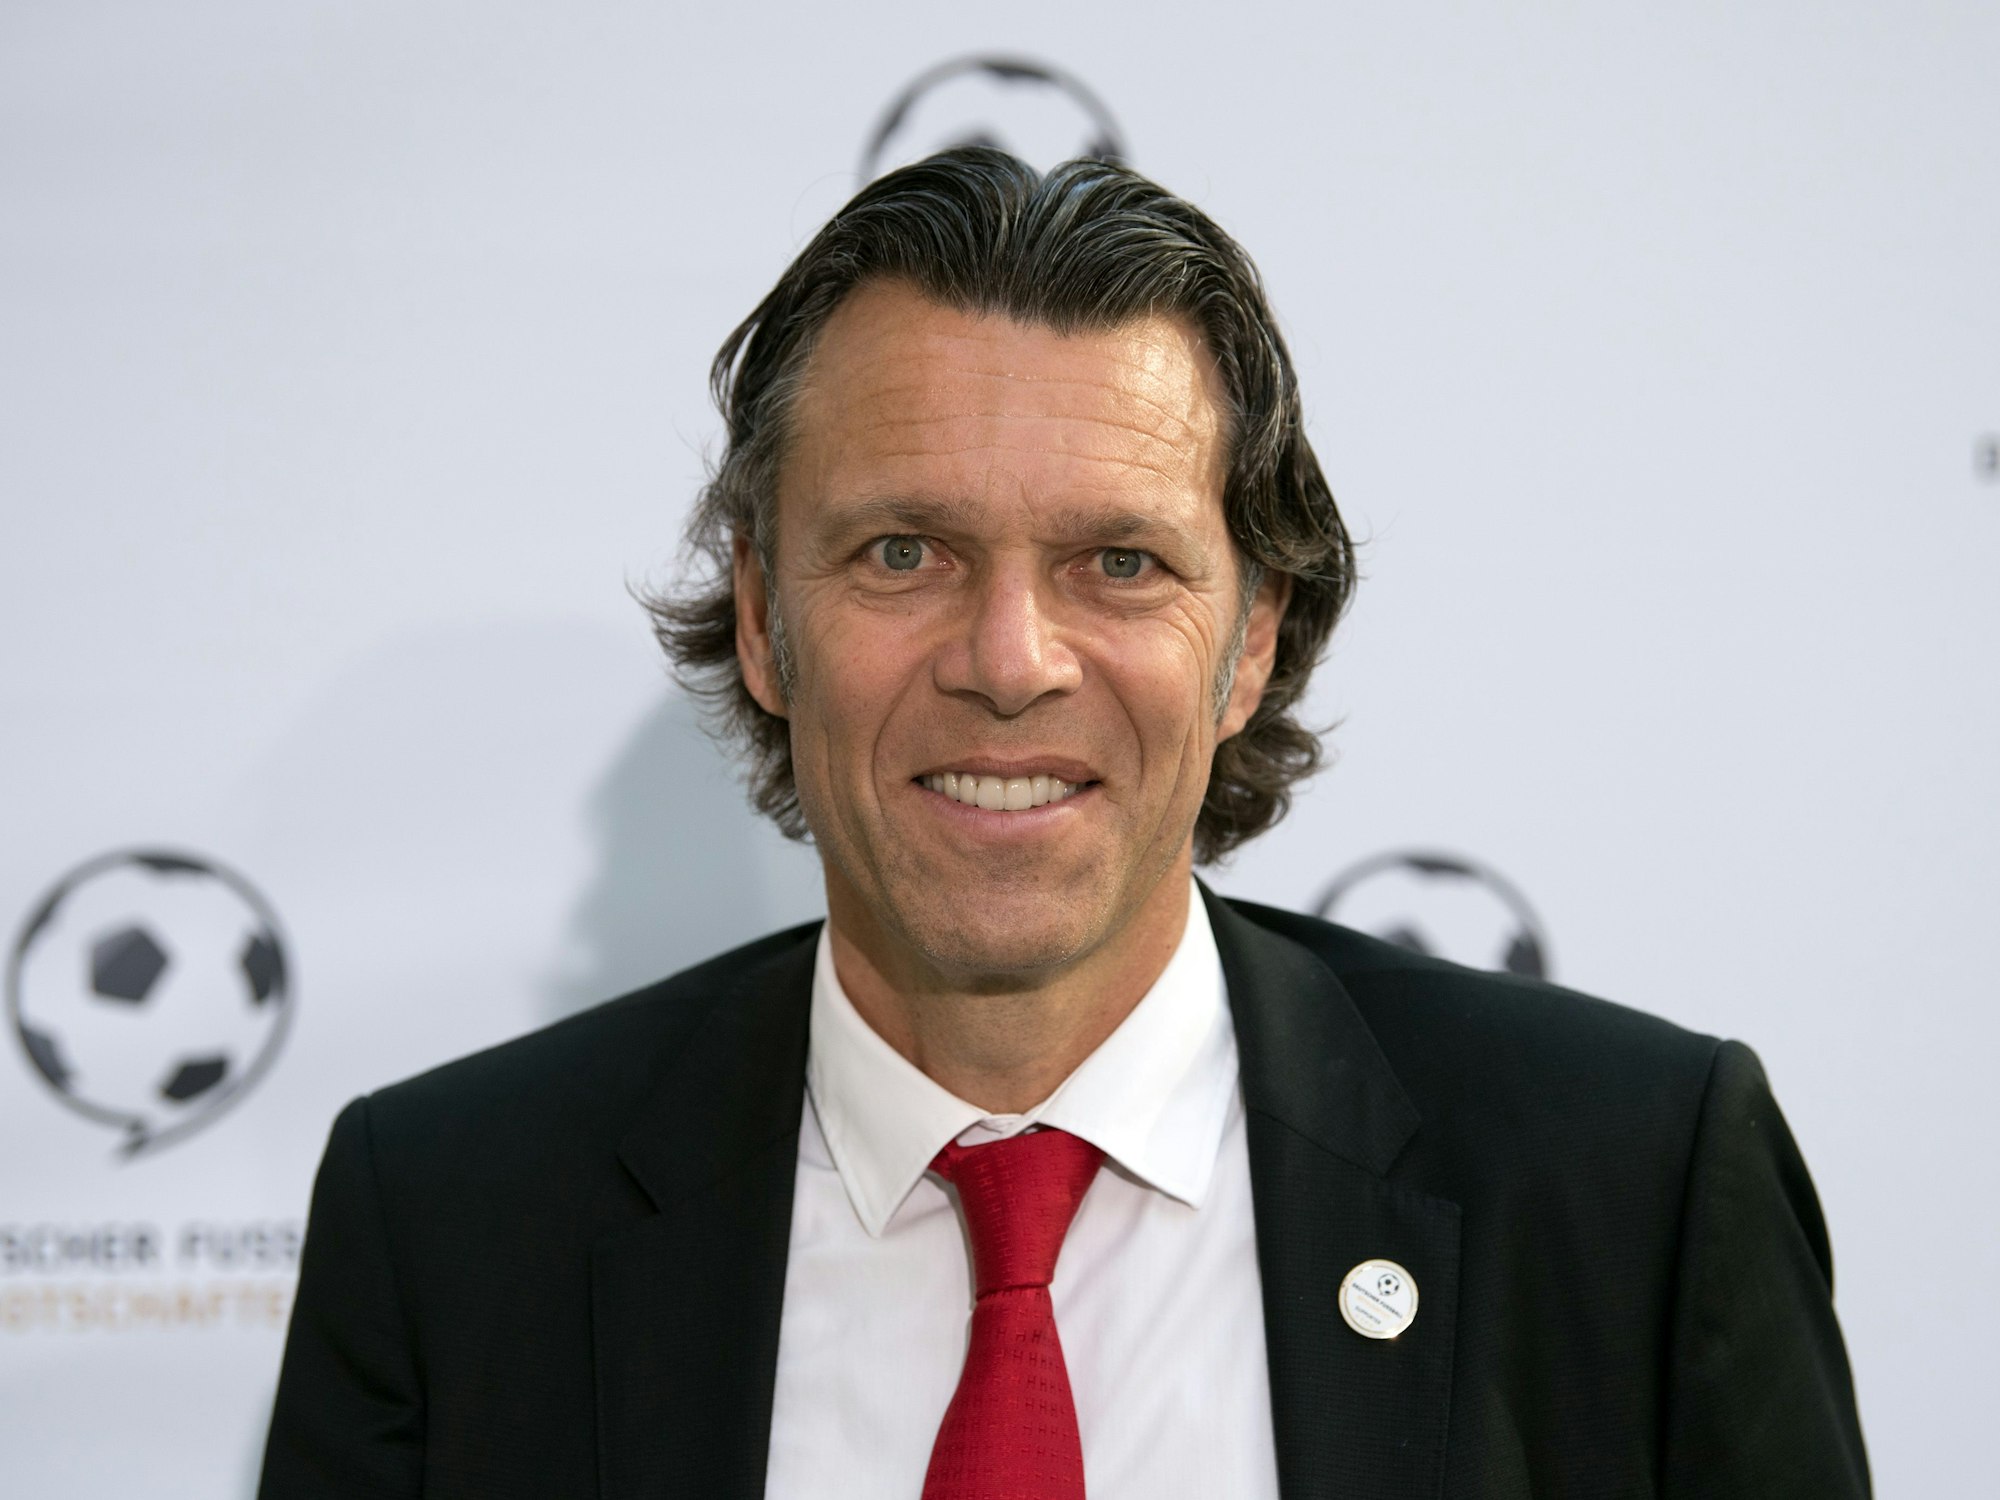 Urs Meier, früherer Schweizer Fußballschiedsrichter, lächelt bei einer Veranstaltung in die Kamera.